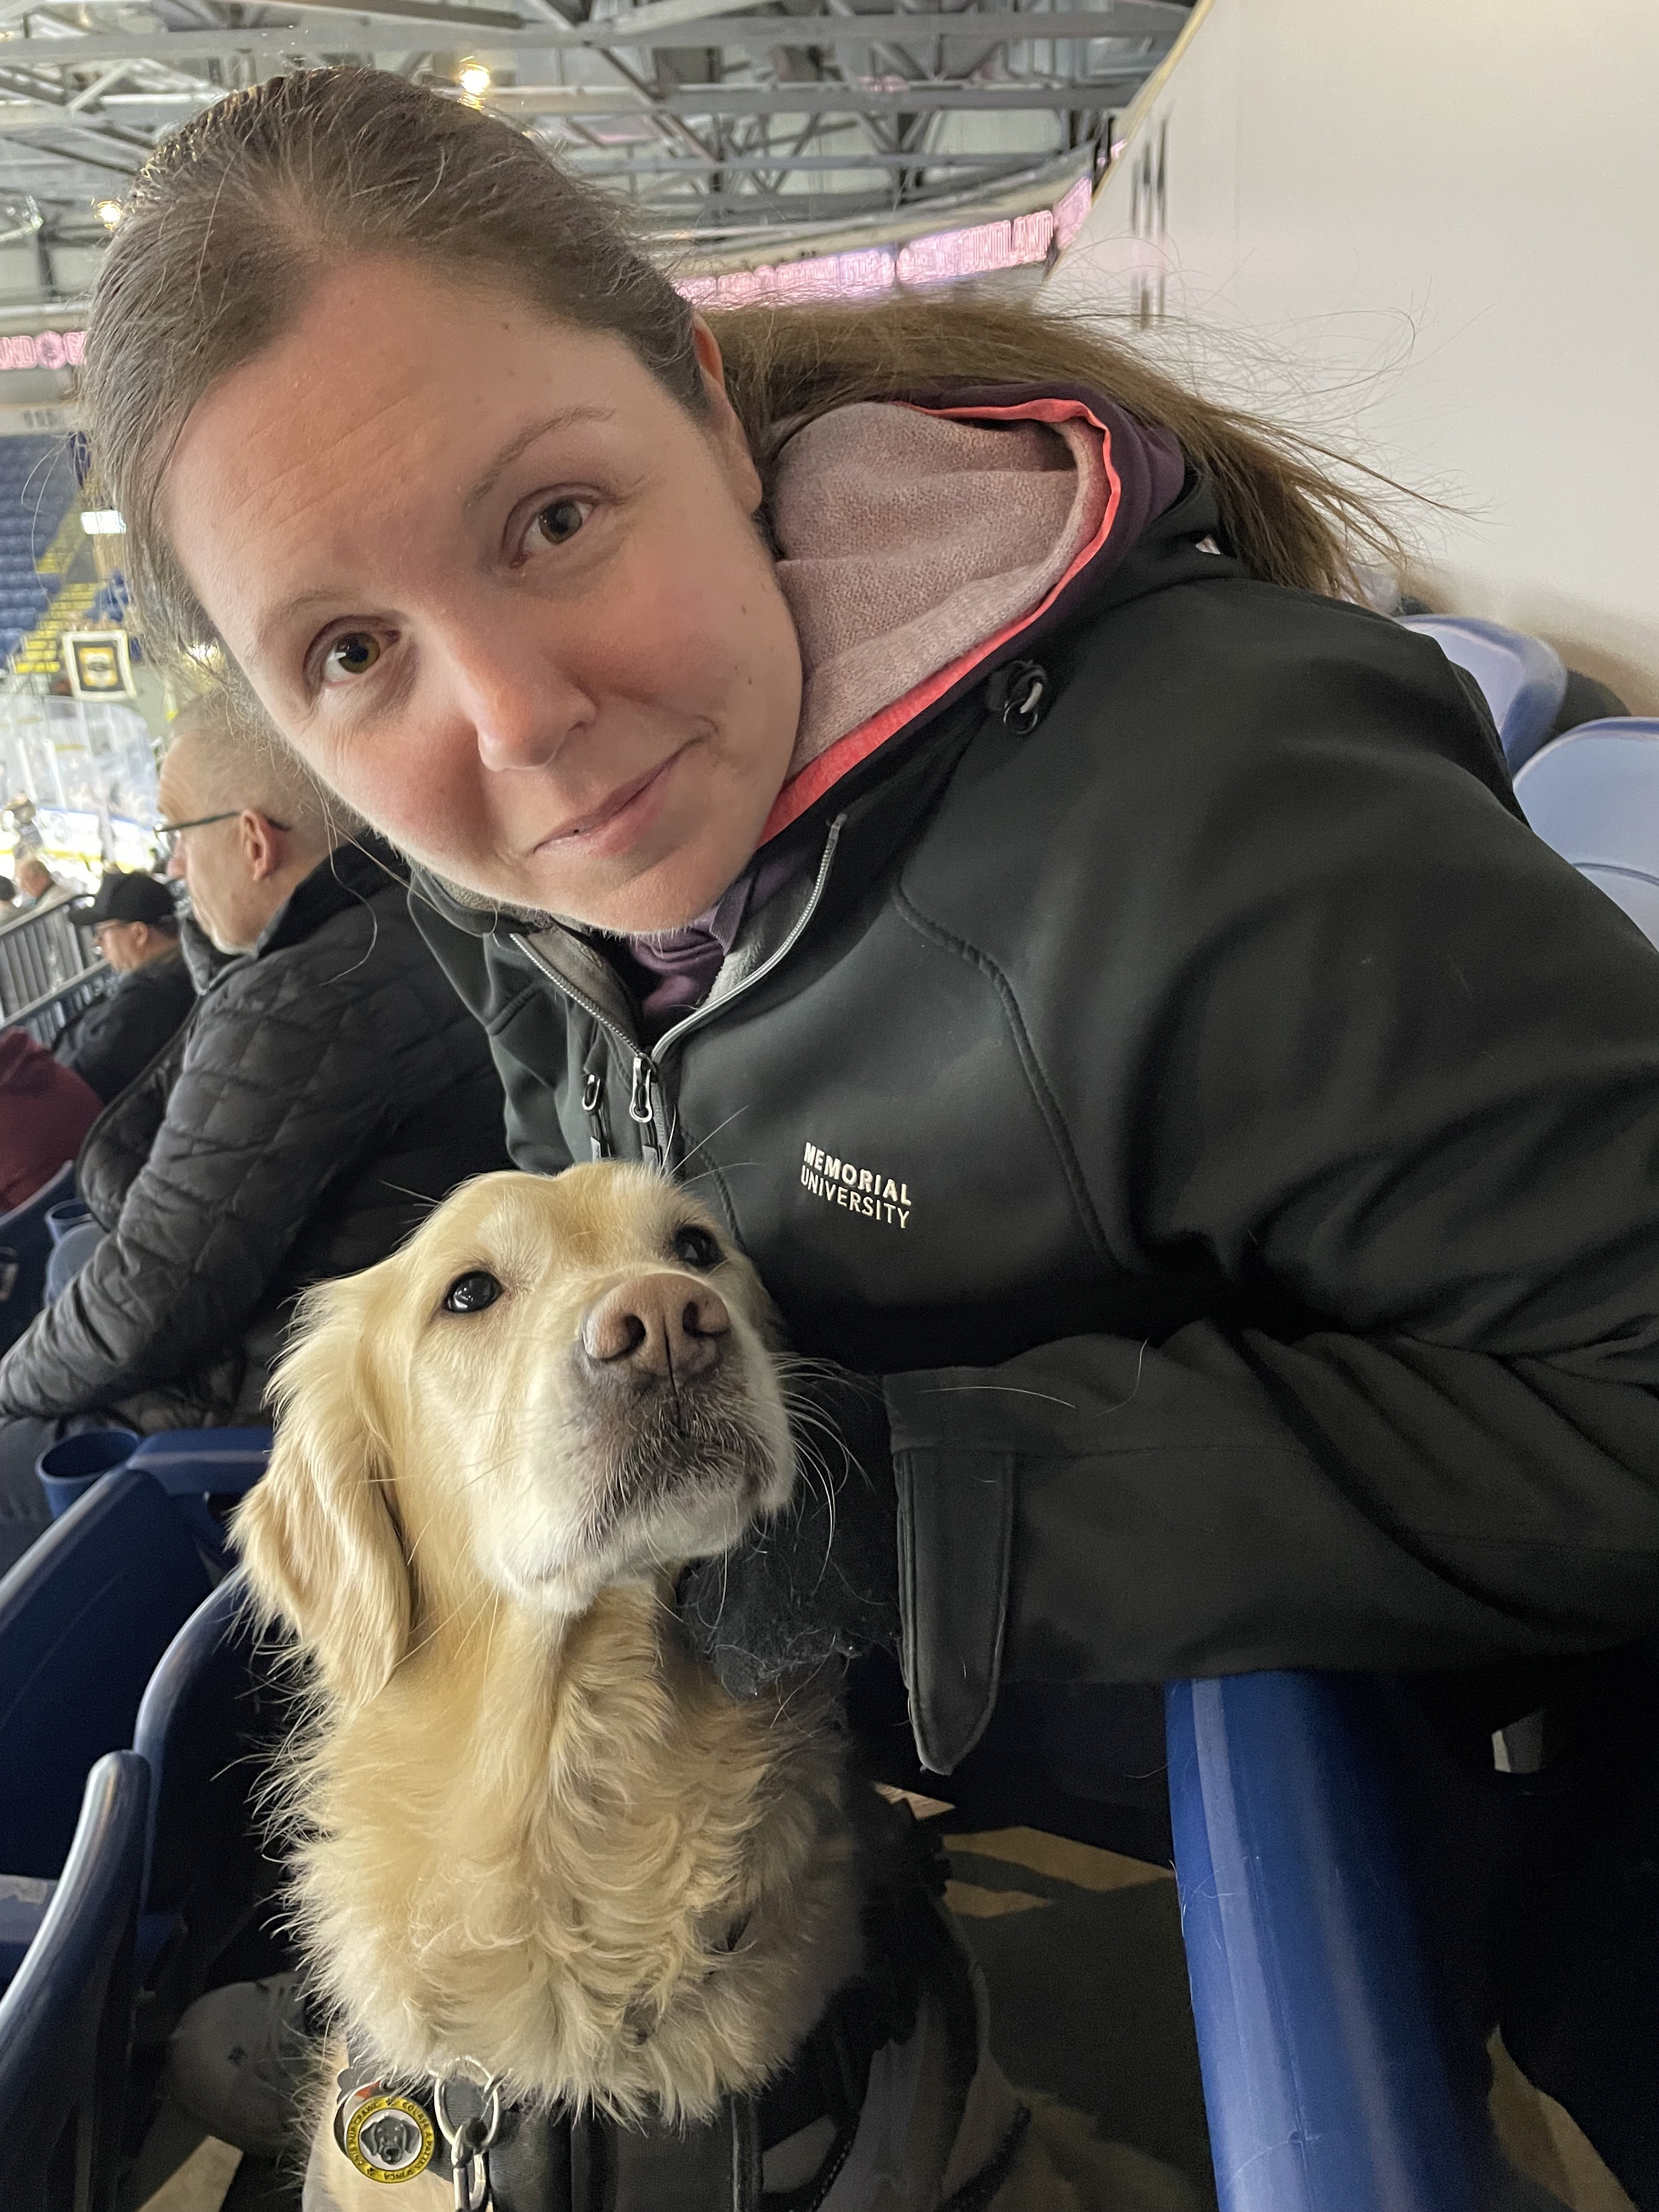 Kelly et son chien-guide, Maple, sont assis dans les tribunes d'un stade de hockey.